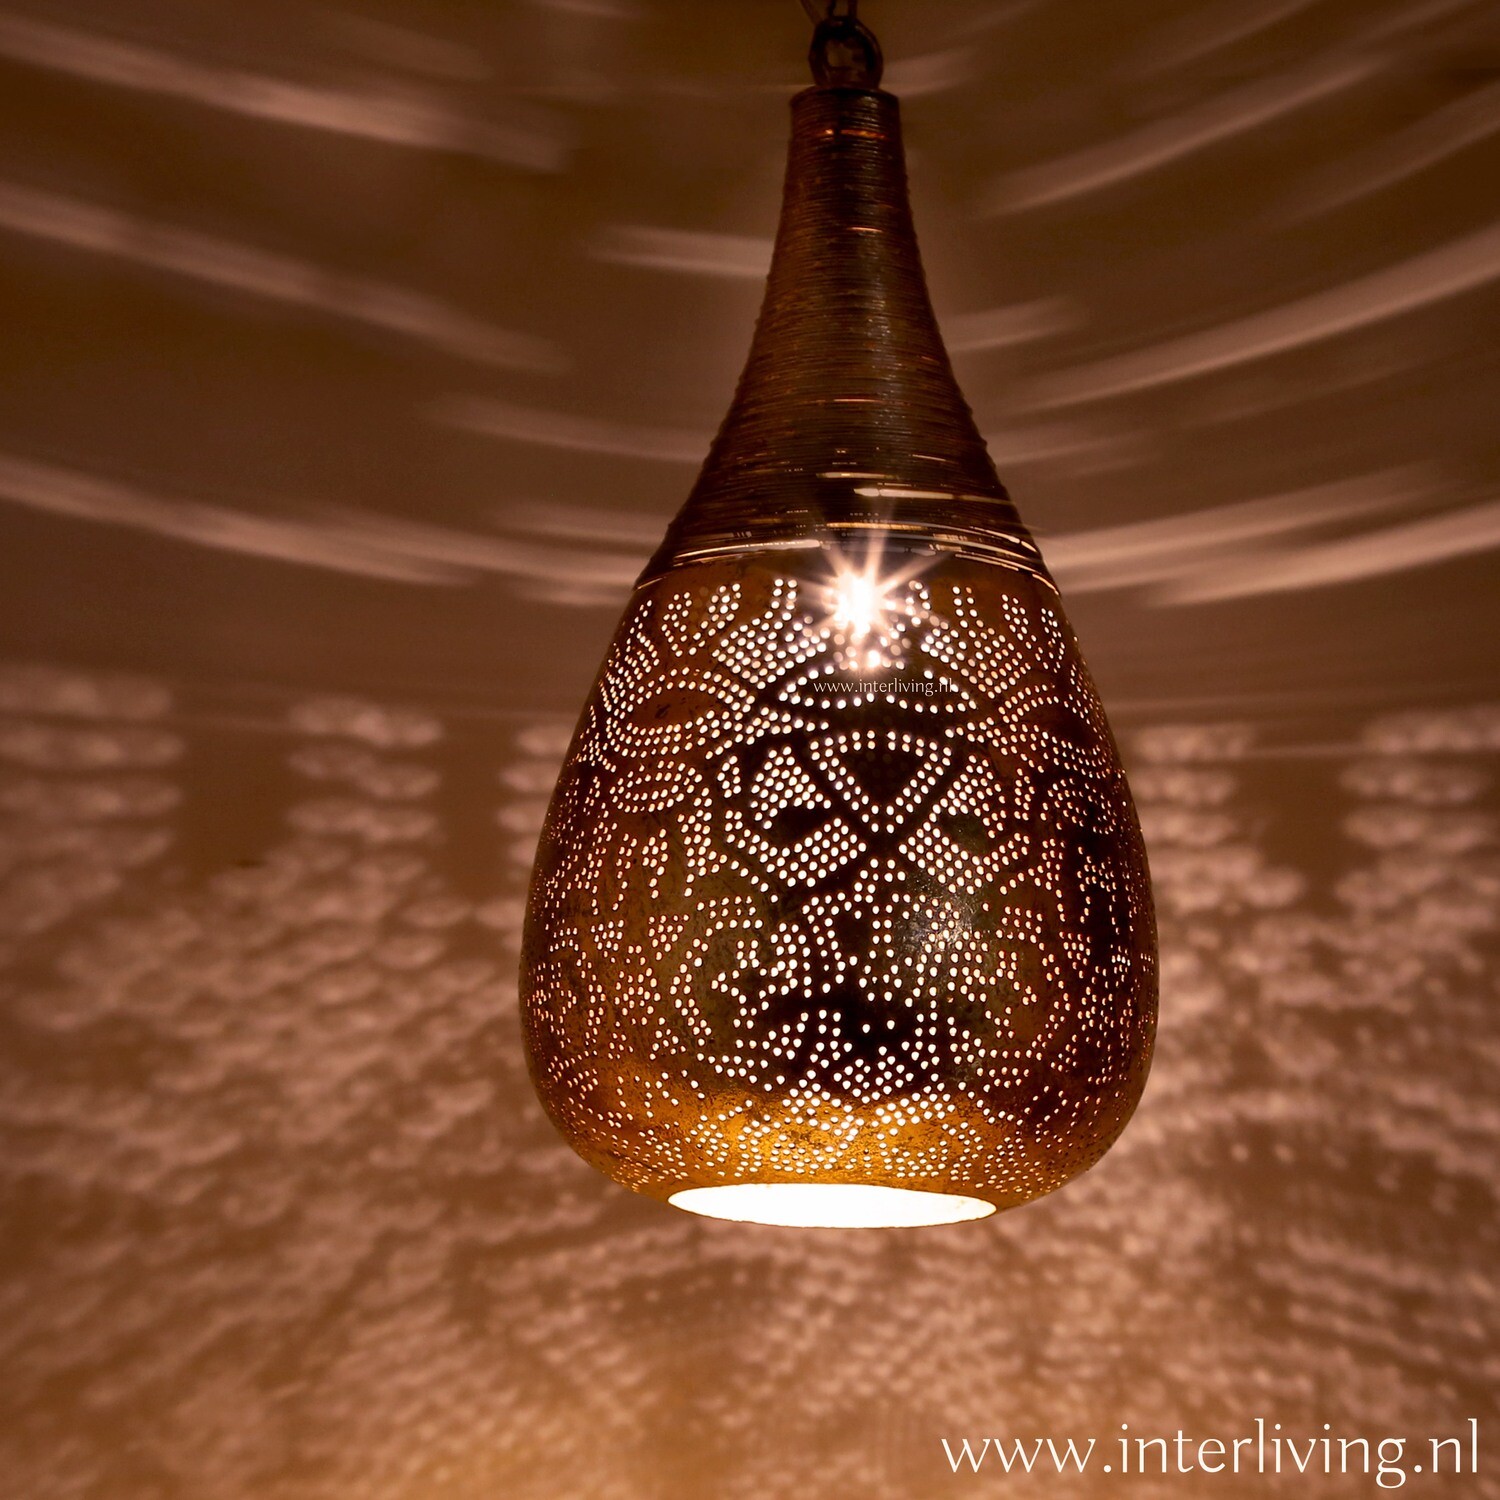 Hanglamp"Bindi"in "drop wire" of druppel vorm lamp met filigrain design -  koper + gratis bijpassende set wxinehouders!